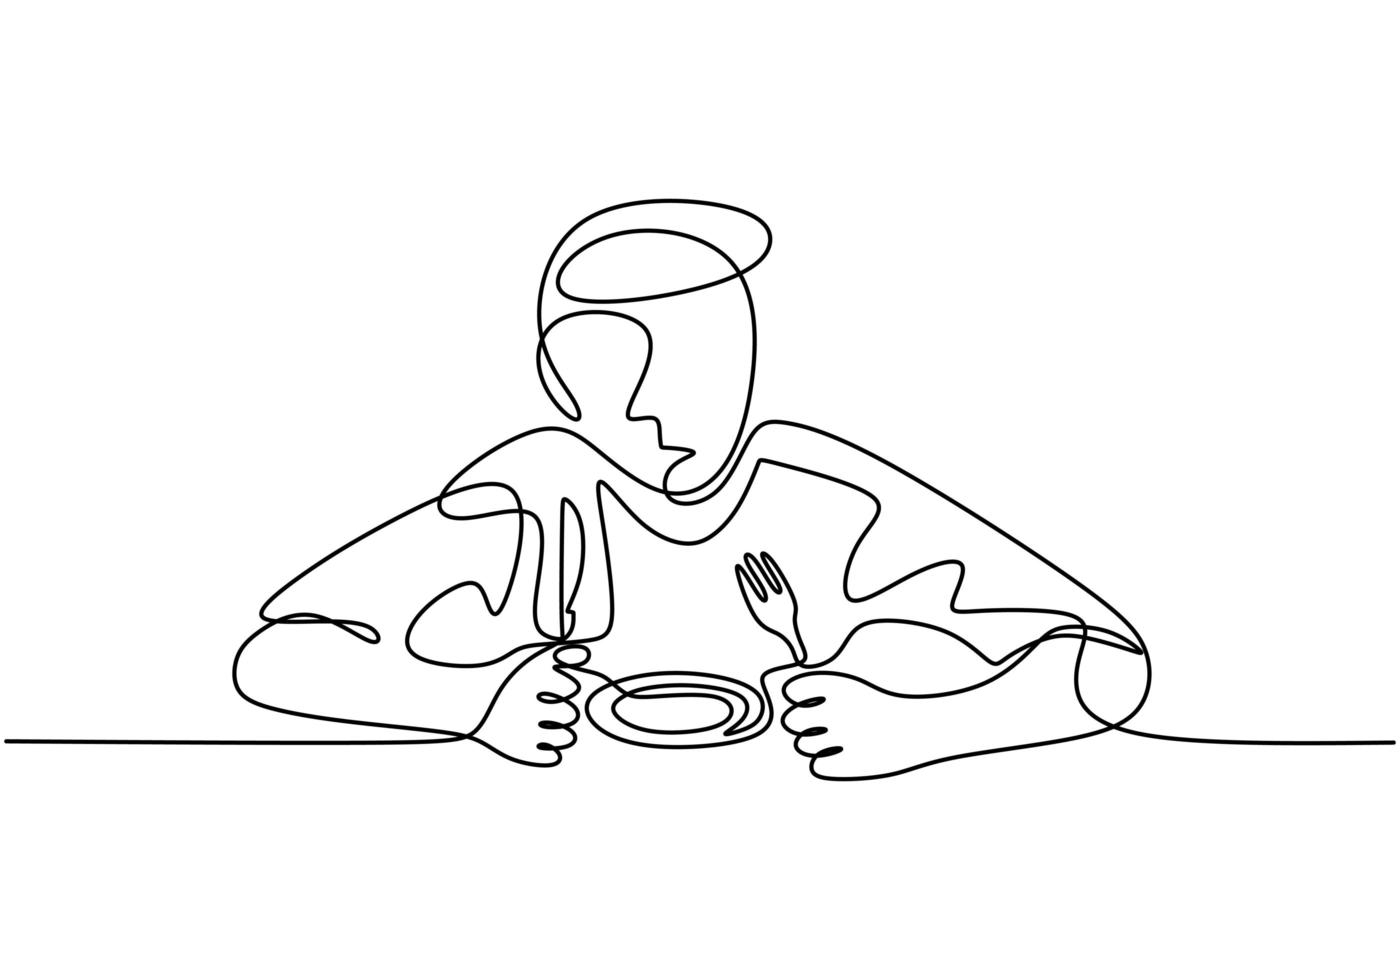 disegno continuo di una linea, vettore di persona che mangia con piatto, forchetta e cucchiaio. design minimalista con semplicità disegnato a mano isolato su sfondo bianco.